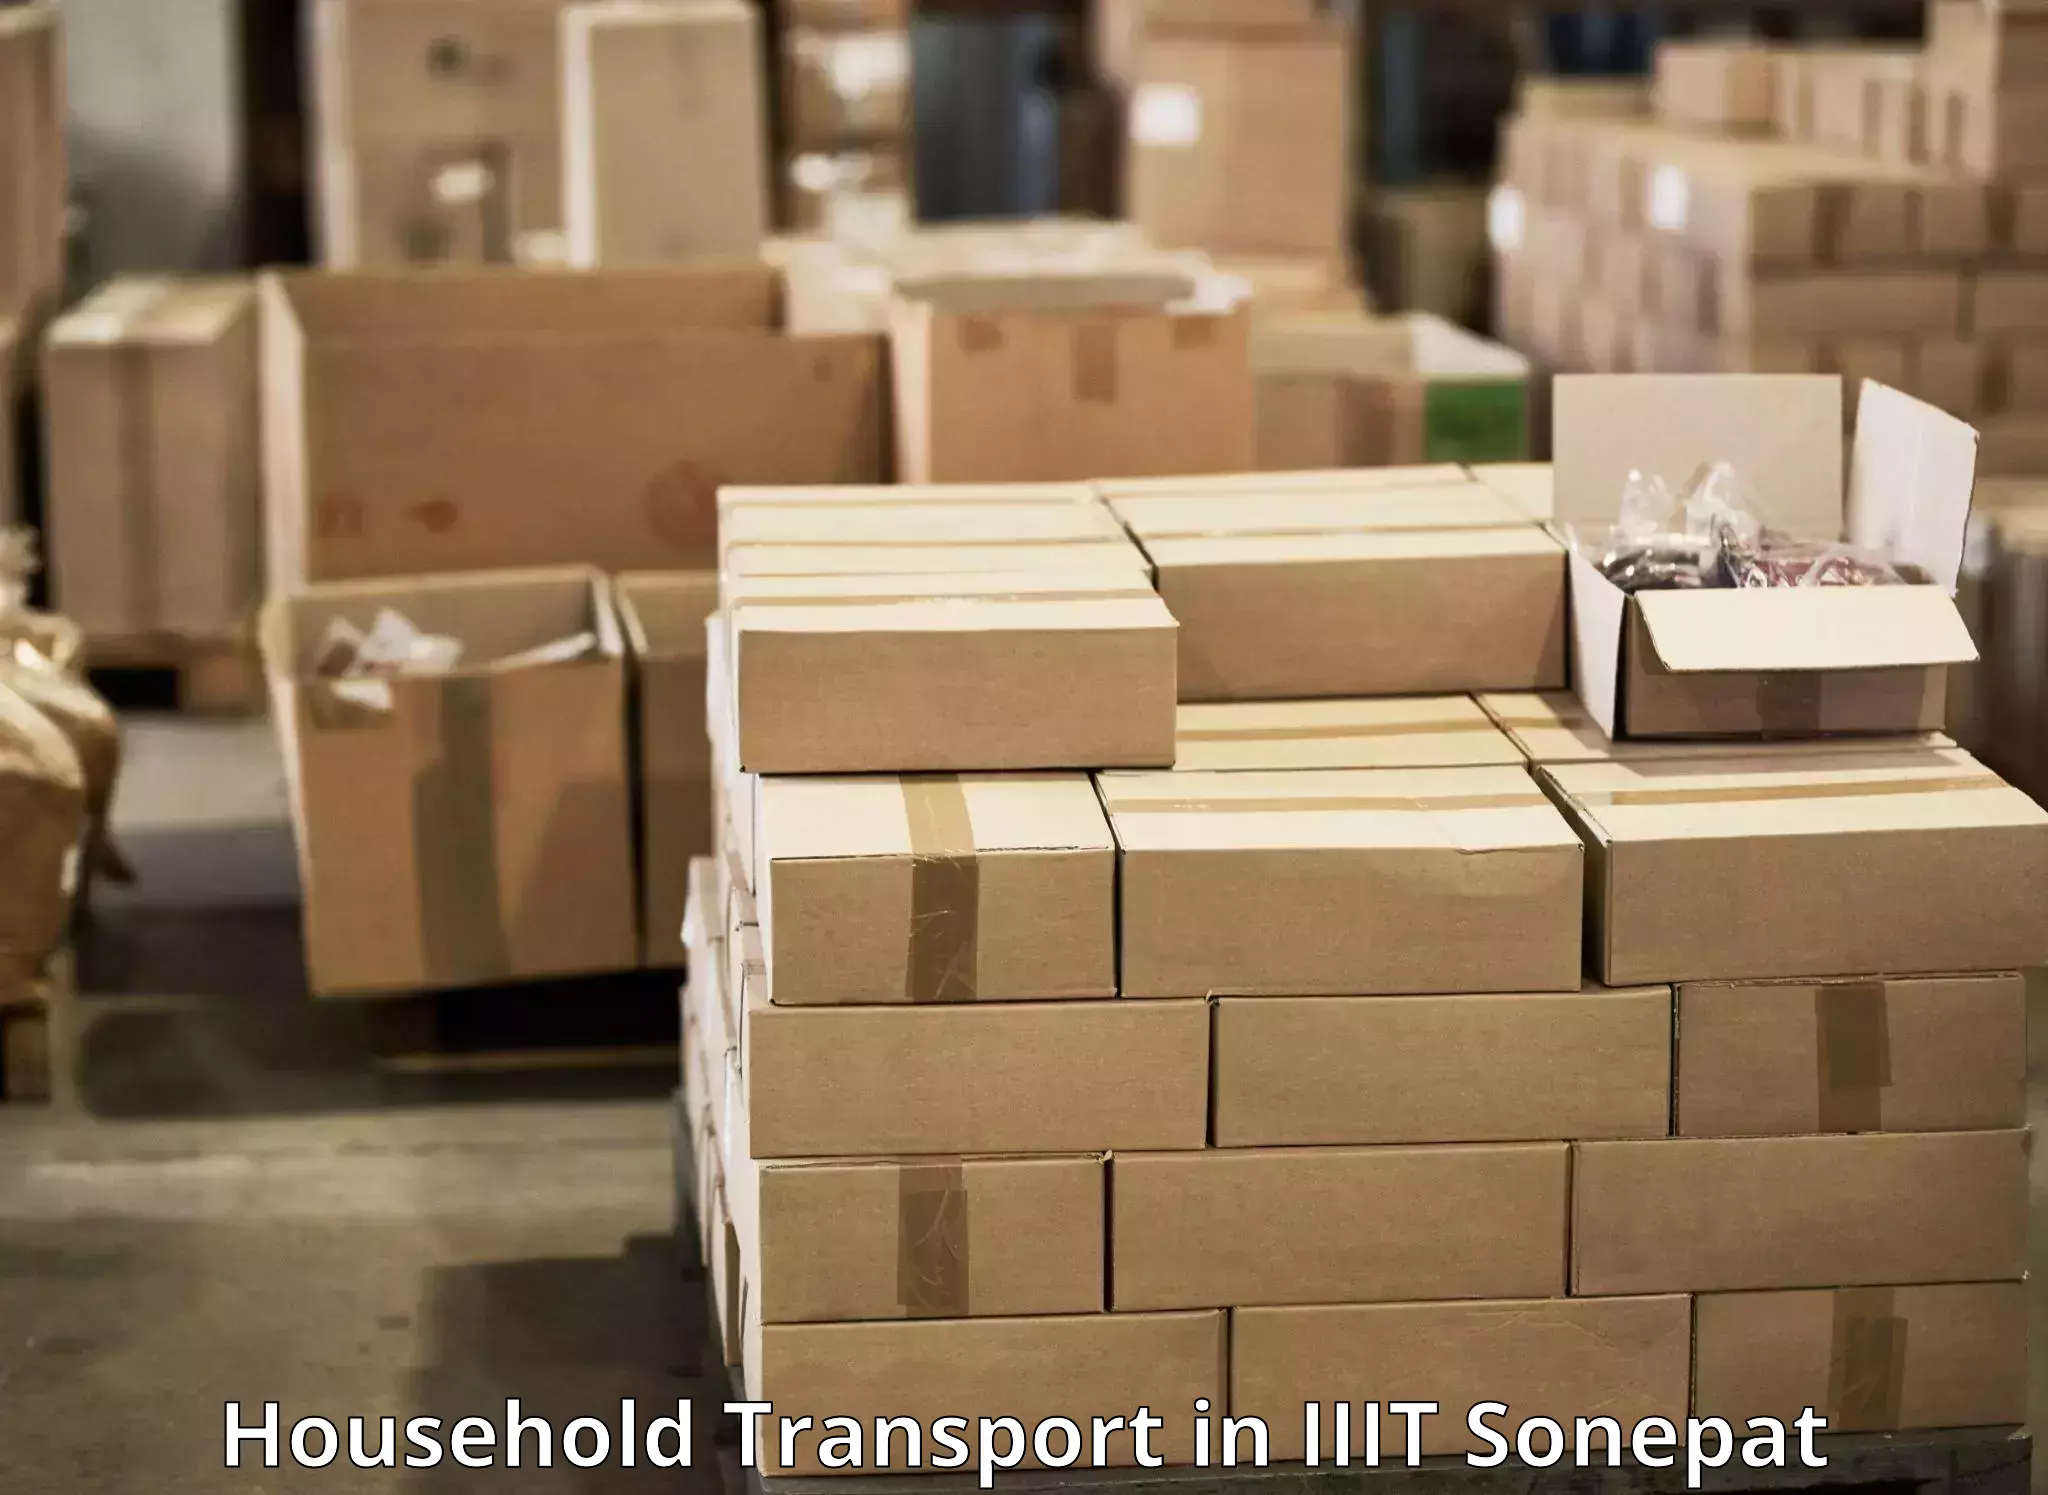 Home goods transportation in IIIT Sonepat